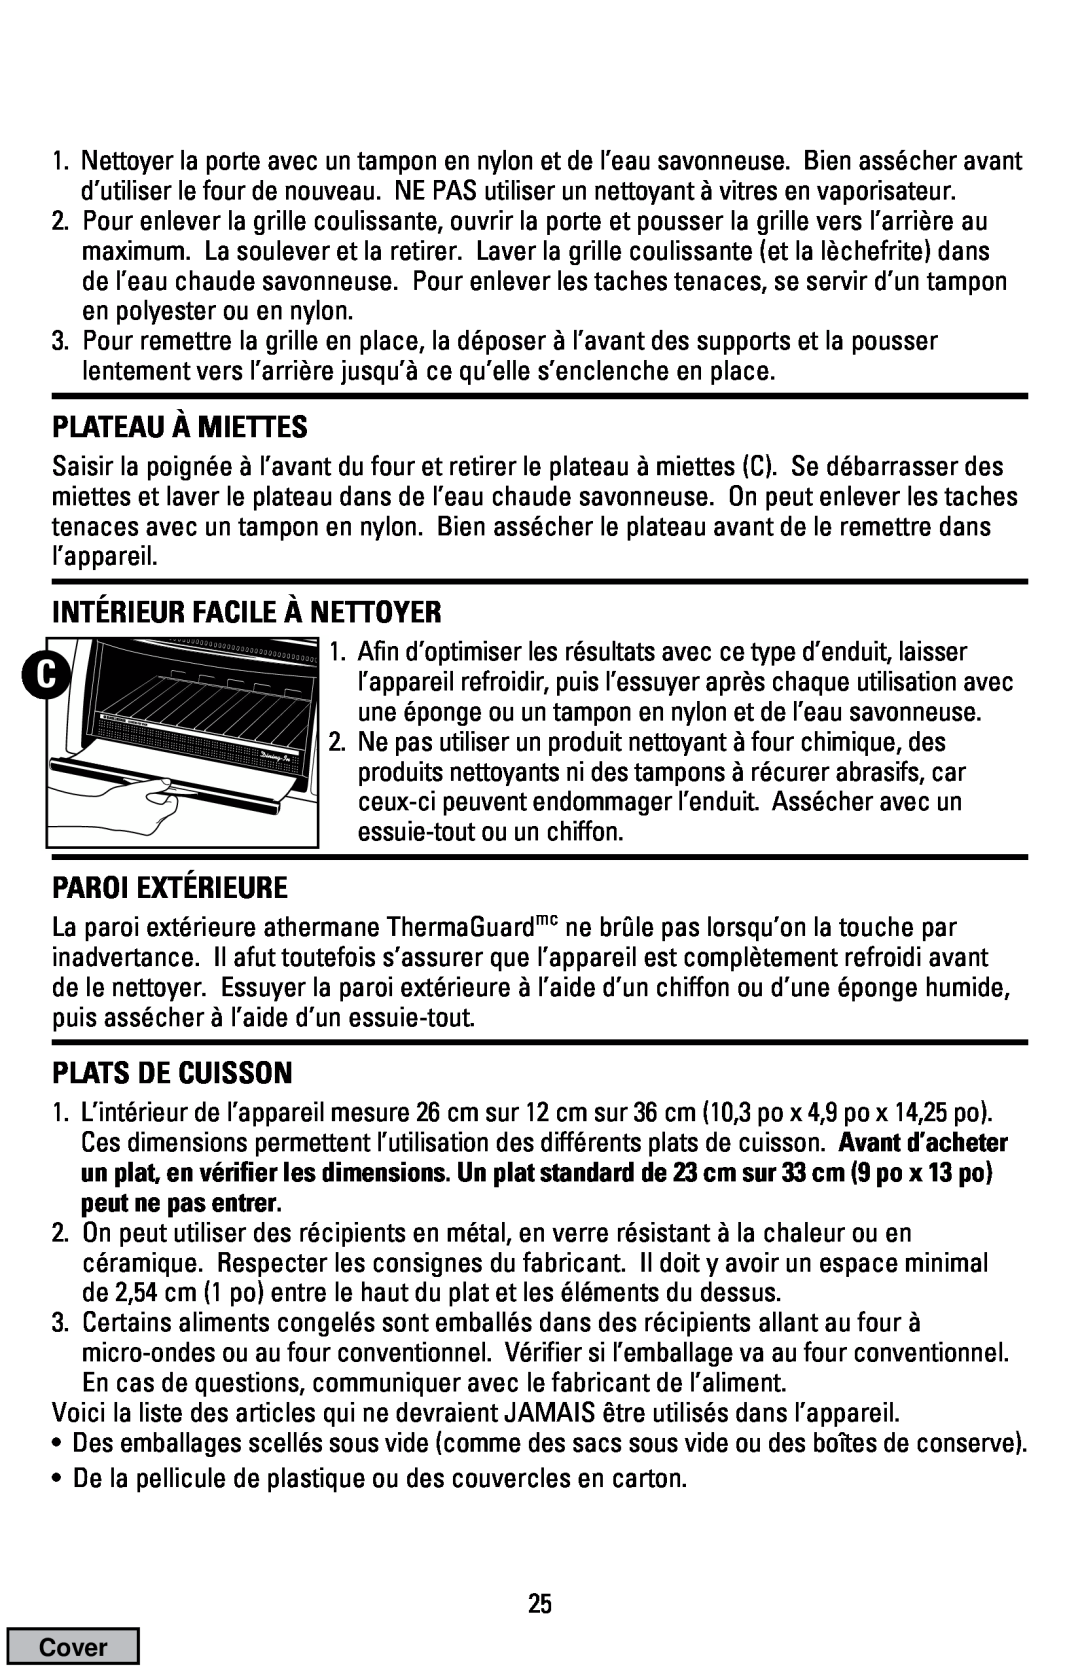 Black & Decker CTO9000 manual Plateau À Miettes, Intérieur Facile À Nettoyer, Paroi Extérieure, Plats De Cuisson 